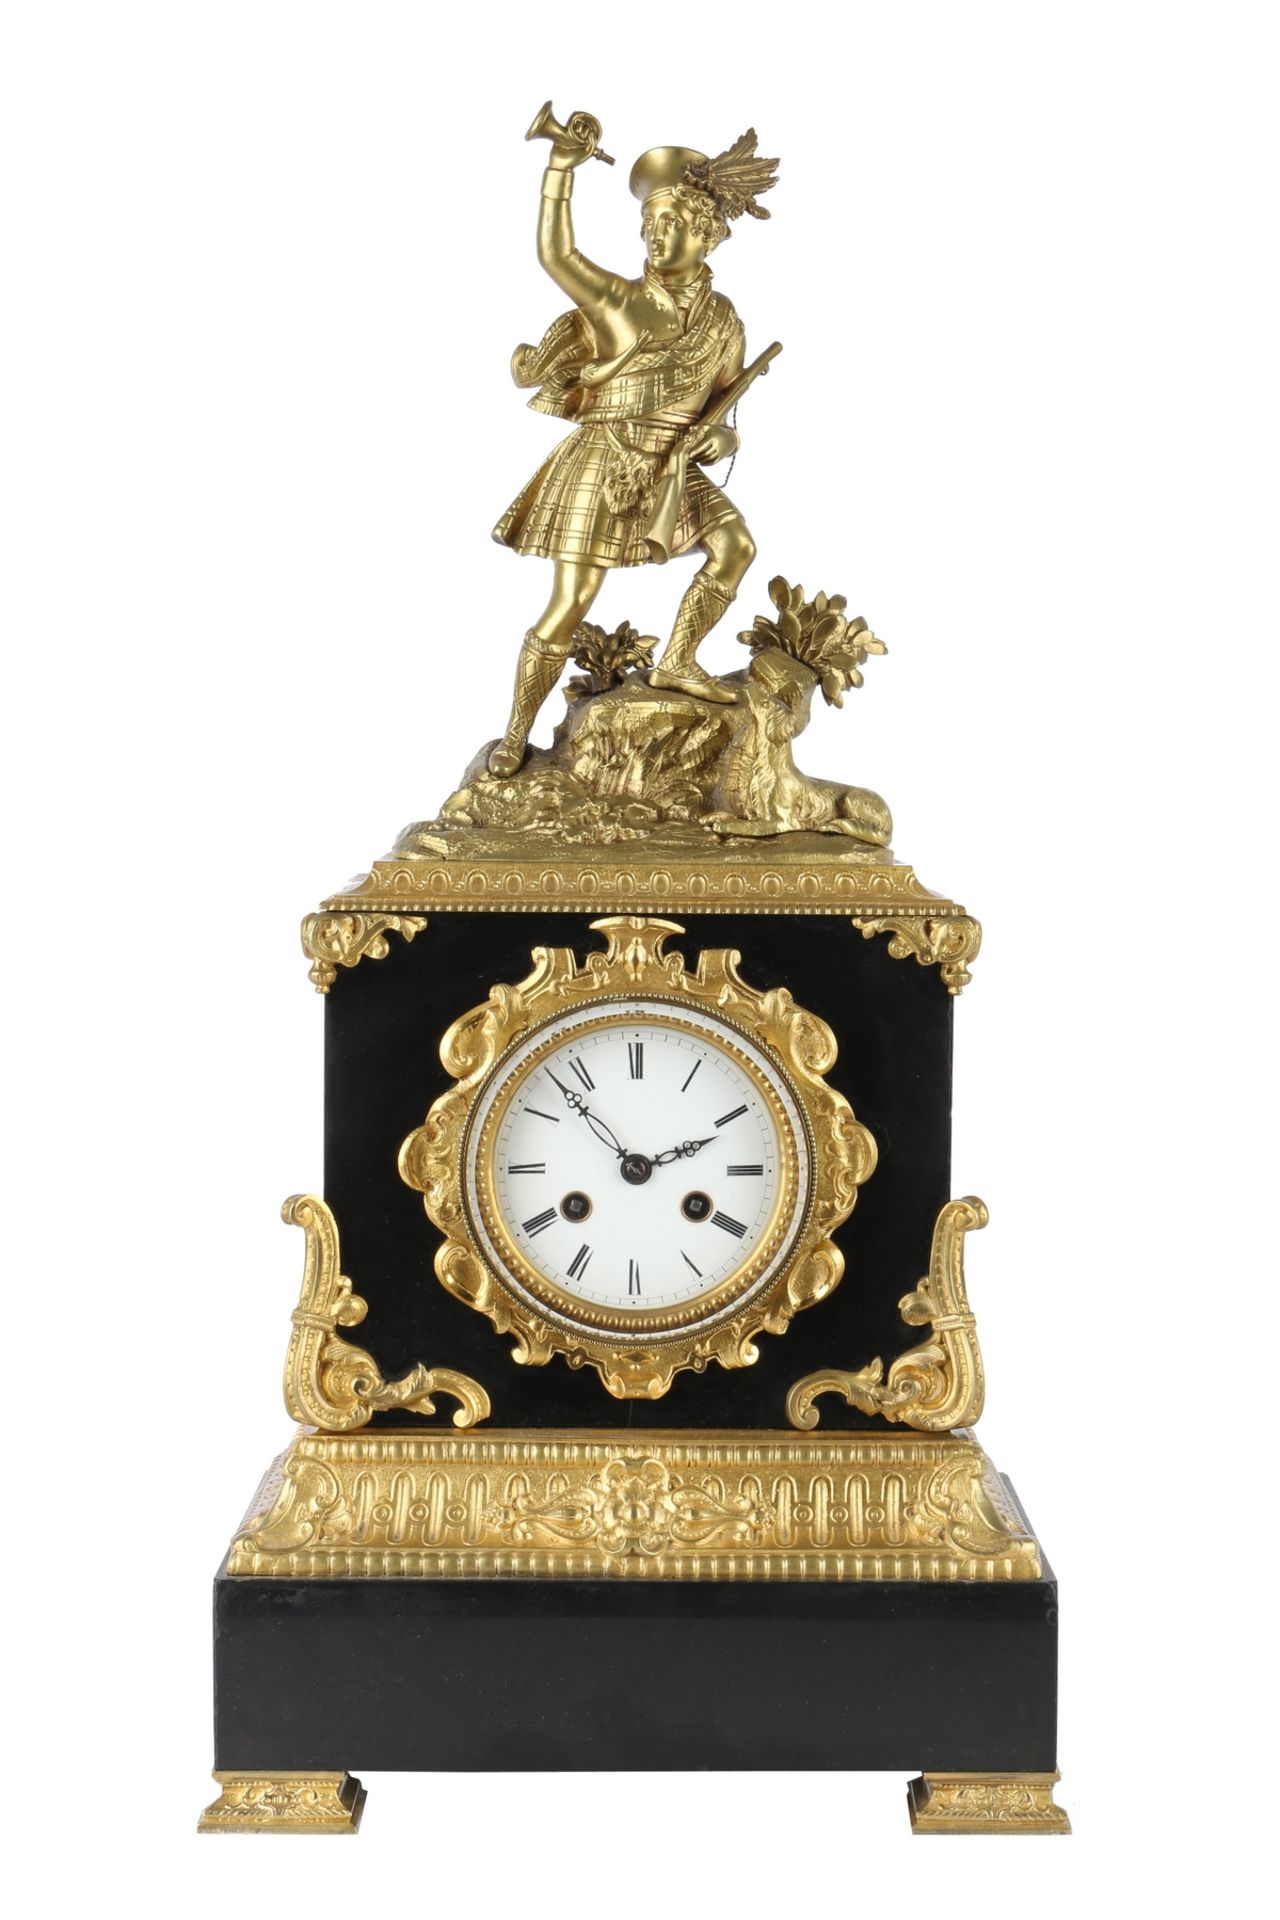 Bronze Figuren-Pendule / Kaminuhr Frankreich 19. Jahrhundert, french mantel clock 19th century,